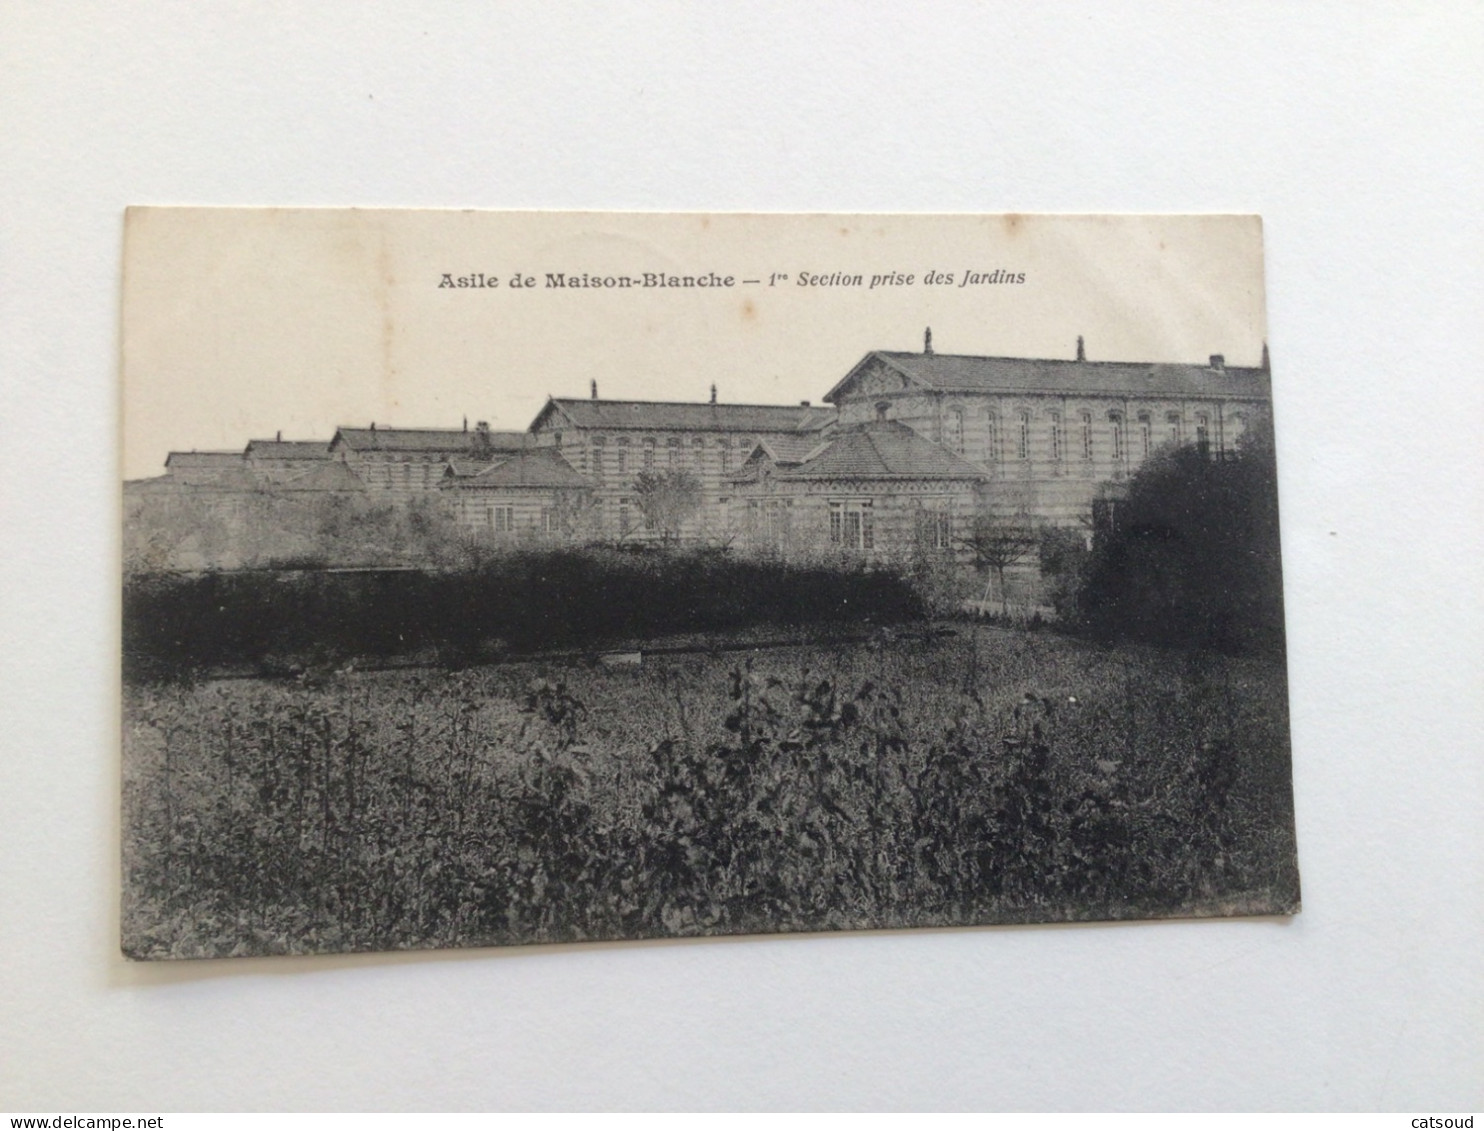 Carte Postale Ancienne (1929) Asile De Maison-Blanche - 1ère Section Prise Des Jardins - Neuilly Sur Marne